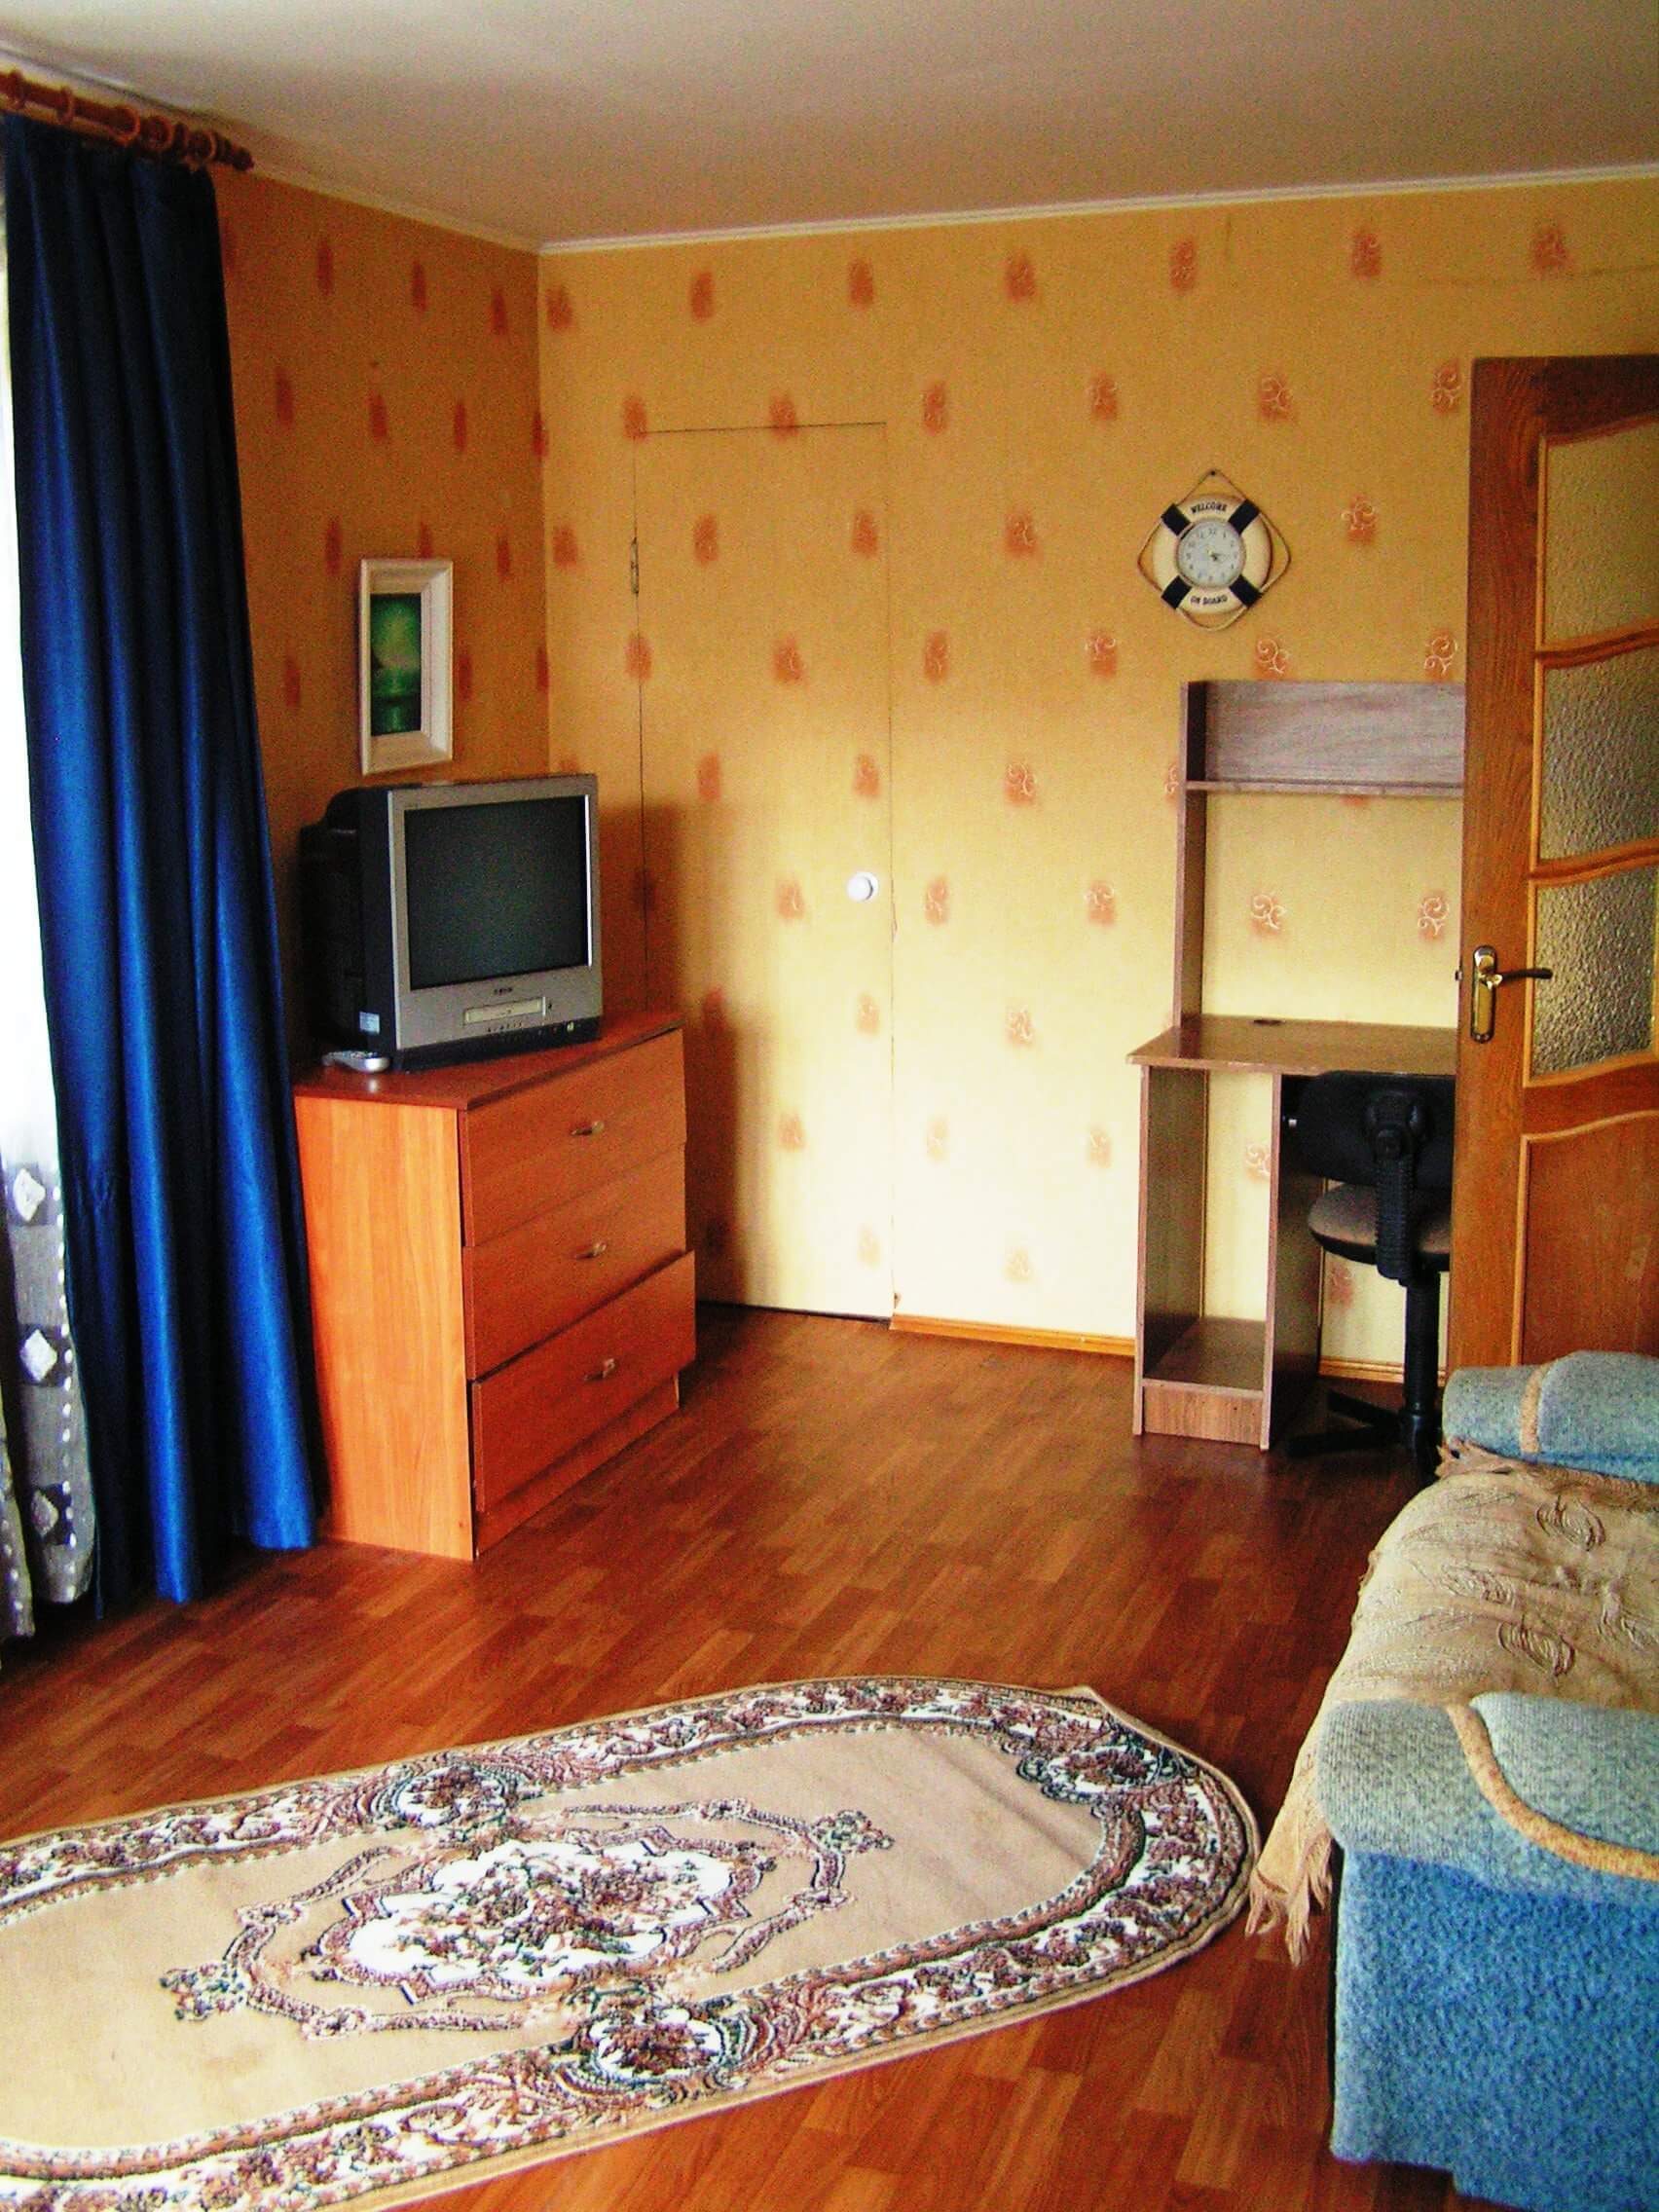 Однокомнатная квартира на Ул. Преображенская, д. 63б (32кв.м)